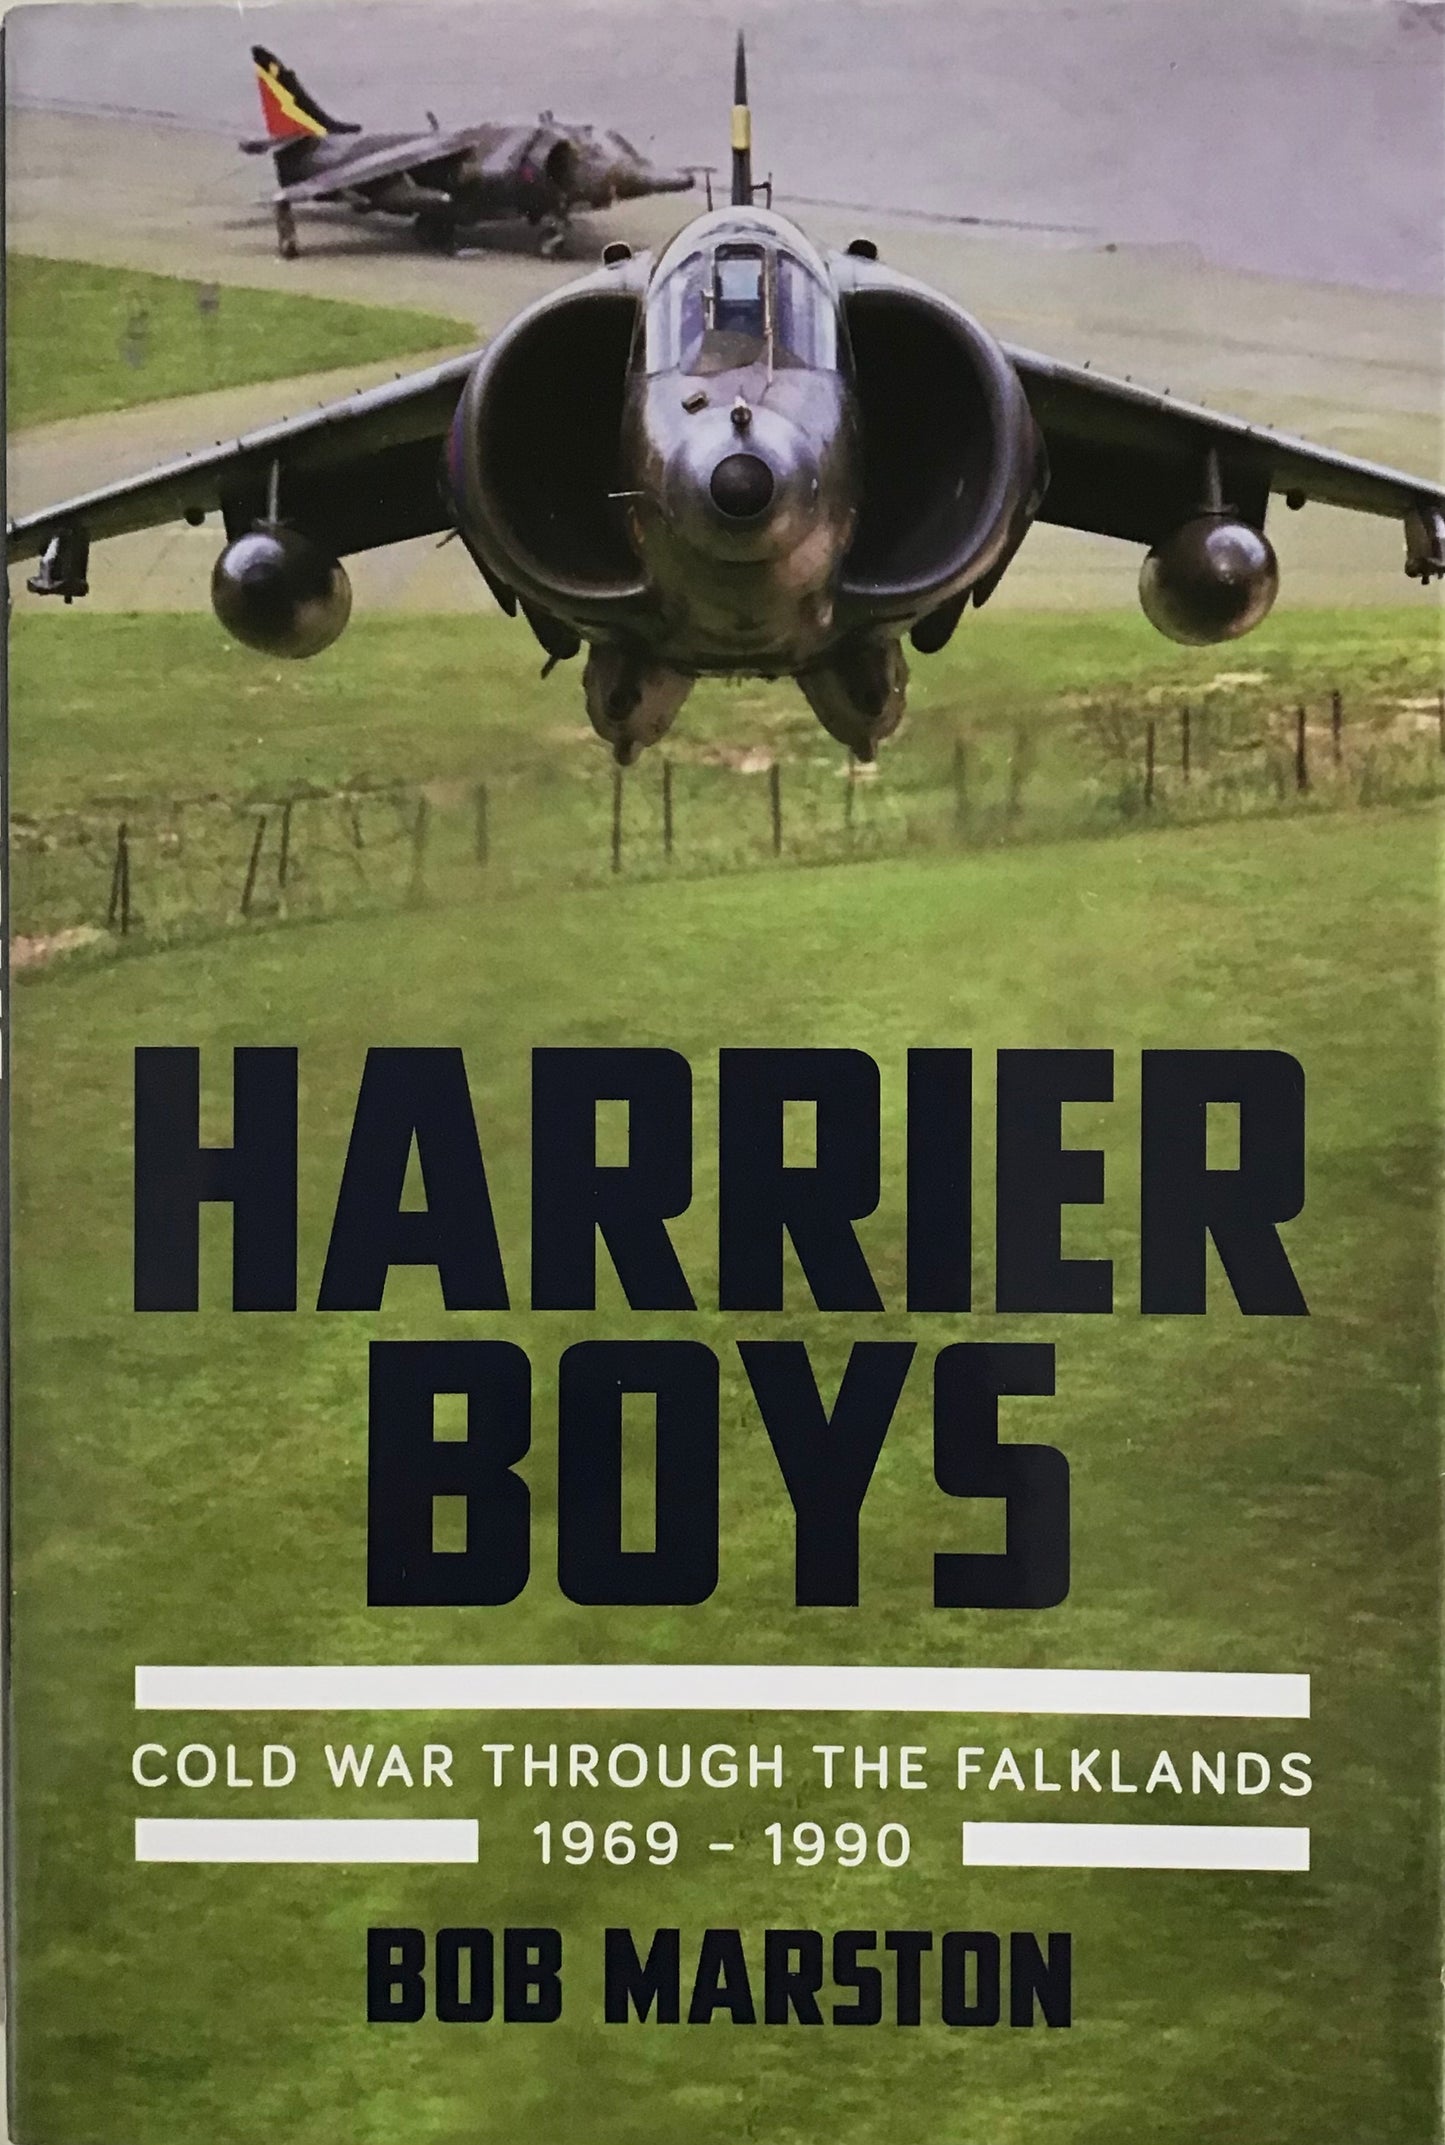 Harrier Boys Cold War through the Falklands 1969 - 1990 - Bob Marston - Chester Model Centre